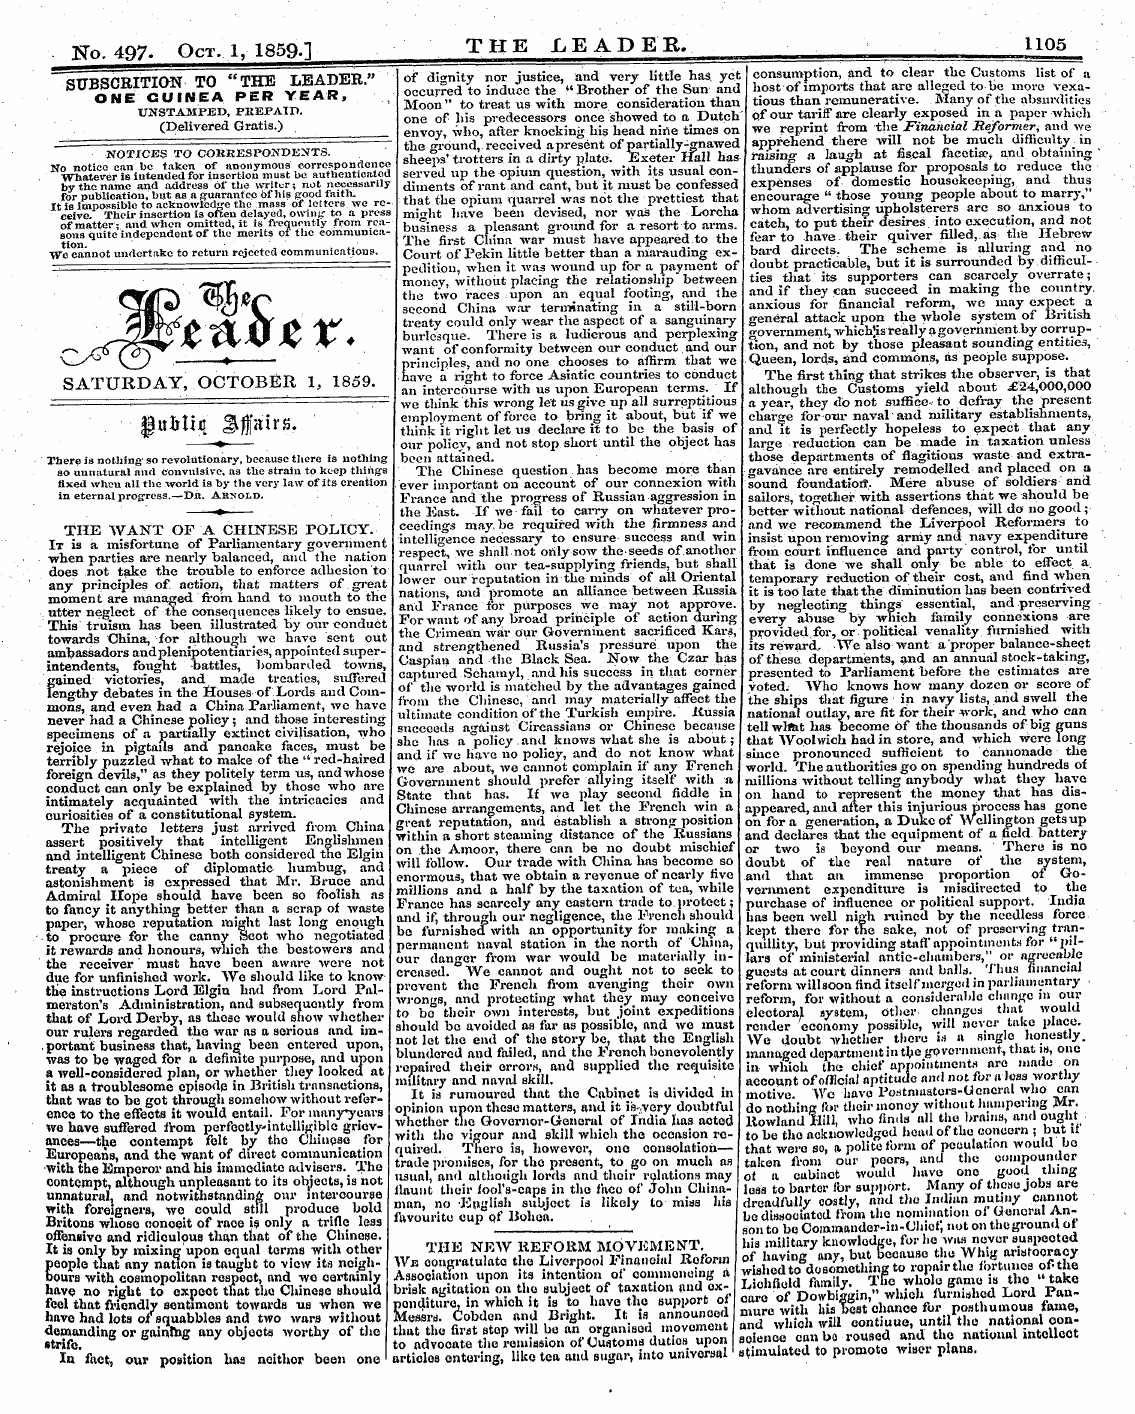 Leader (1850-1860): jS F Y, 2nd edition - ' ' ' . - Aa.Ttrtirf &Lt;3l-Rtf •Rive: &Lt;Pujjuj[ ^ Jjirtus, -?